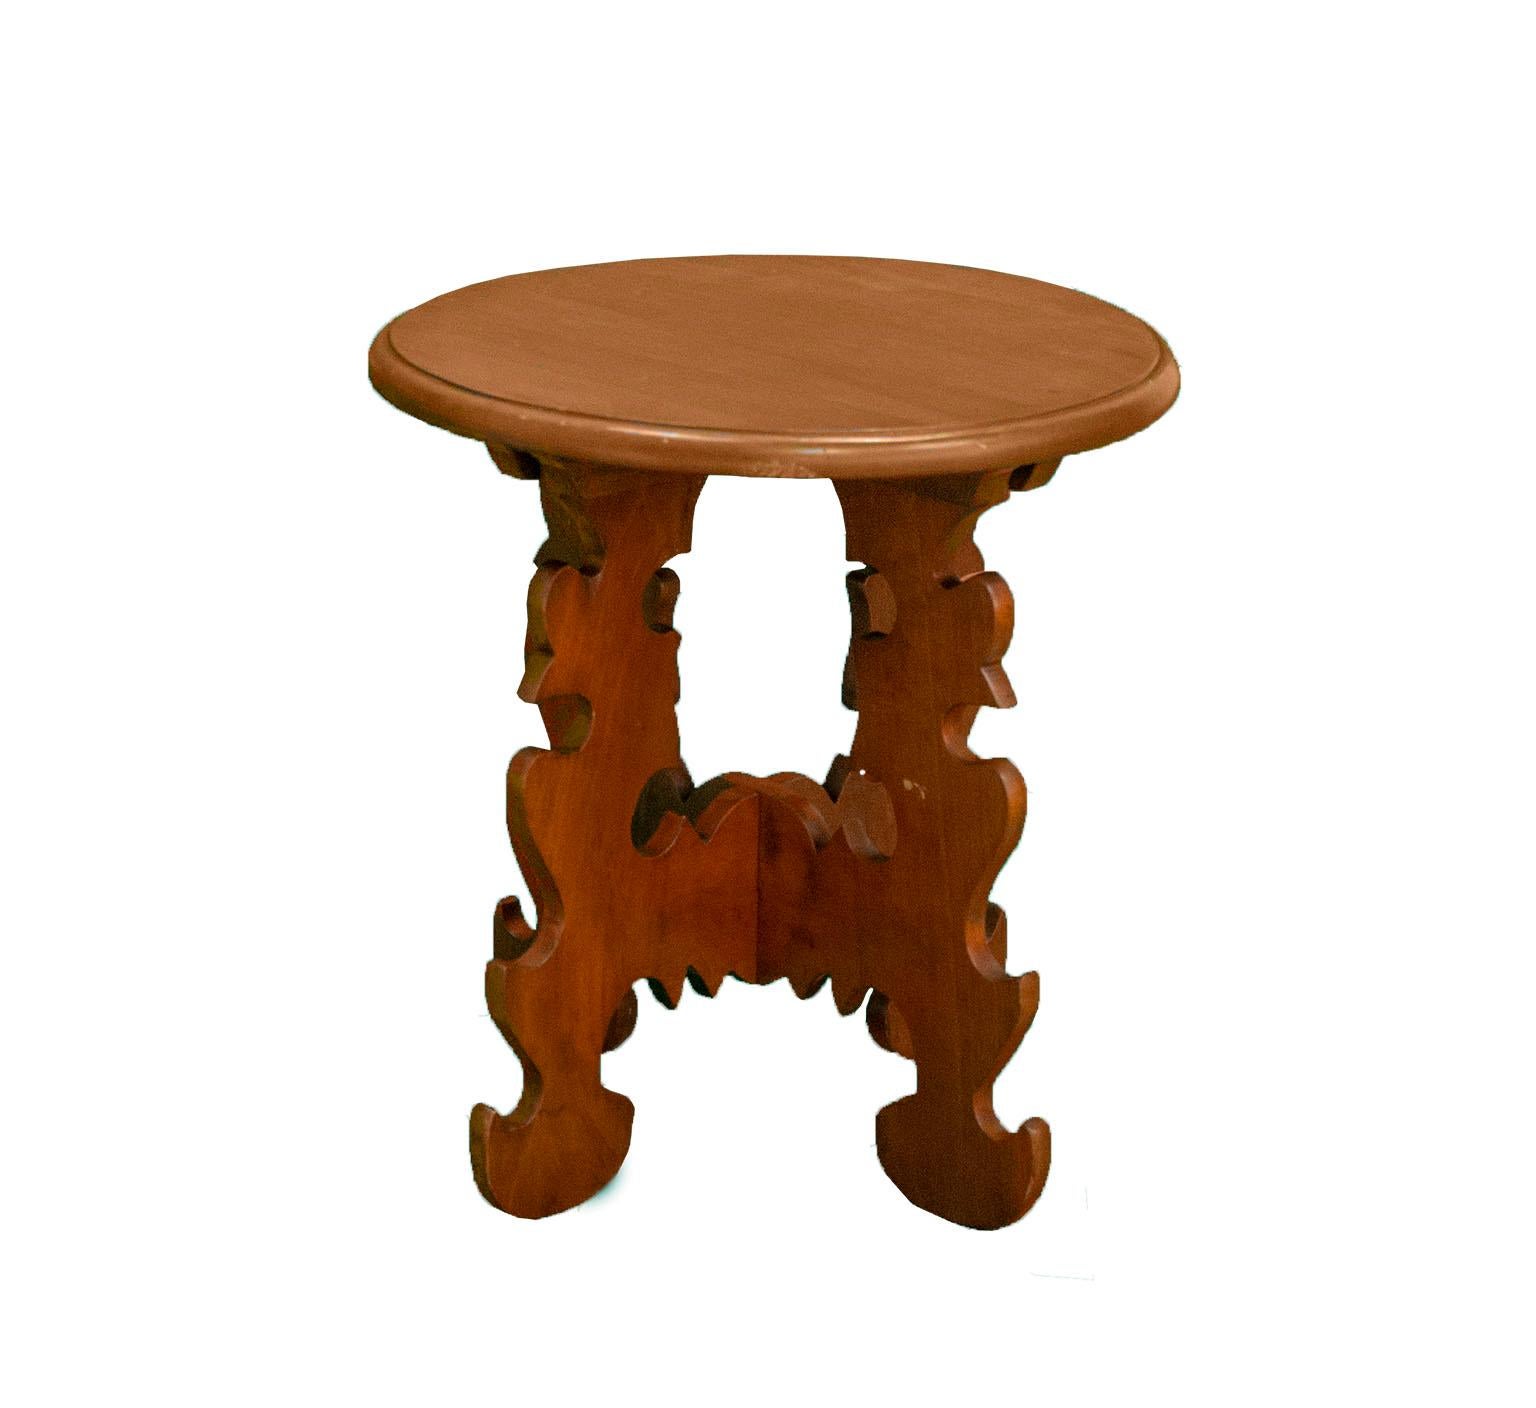 Set aus zwei Stühlen, einem runden Tisch und einer Sitzbank.
hergestellt aus Holz von Don Shoemaeker in Mexiko
Es hat abnehmbare Teile, die keine Schrauben zur Befestigung benötigen
cueramo Holz und Granadillo
Abmessungen:
sitzbank 41 cm. hoch,